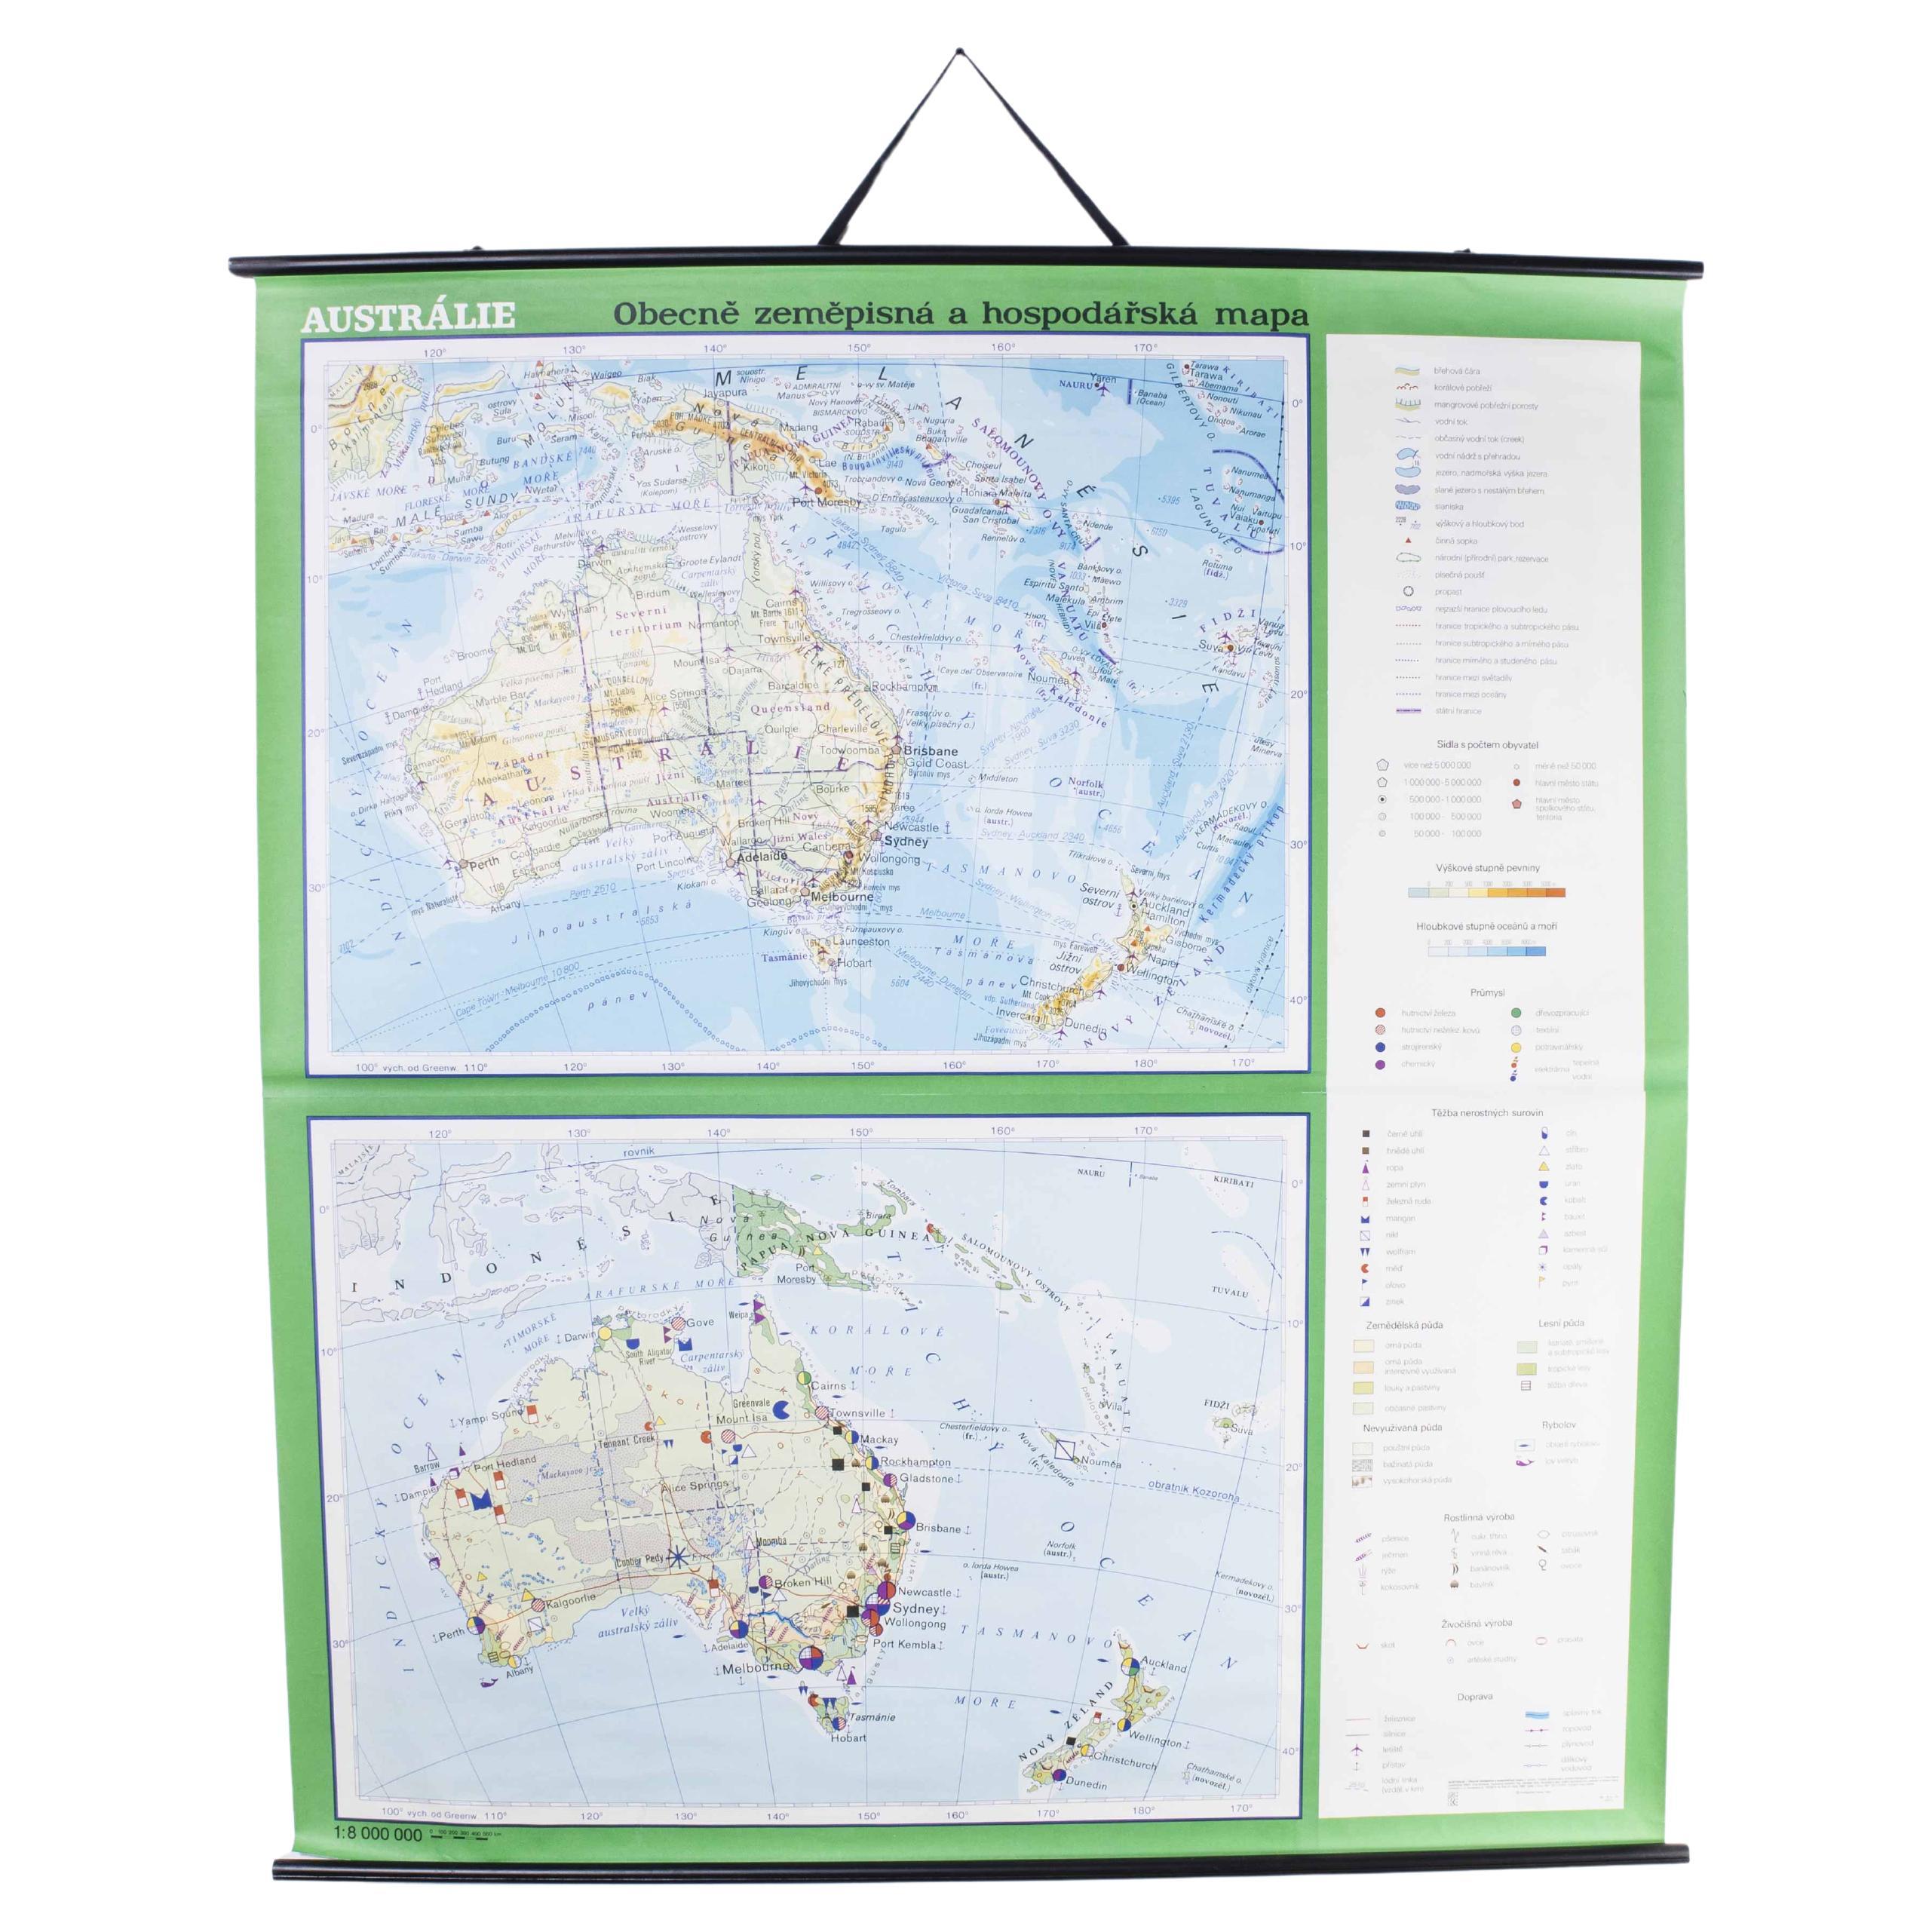 Educational Geographic Map des späten 20. Jahrhunderts – Australien Topographie und Wirtschaft im Angebot